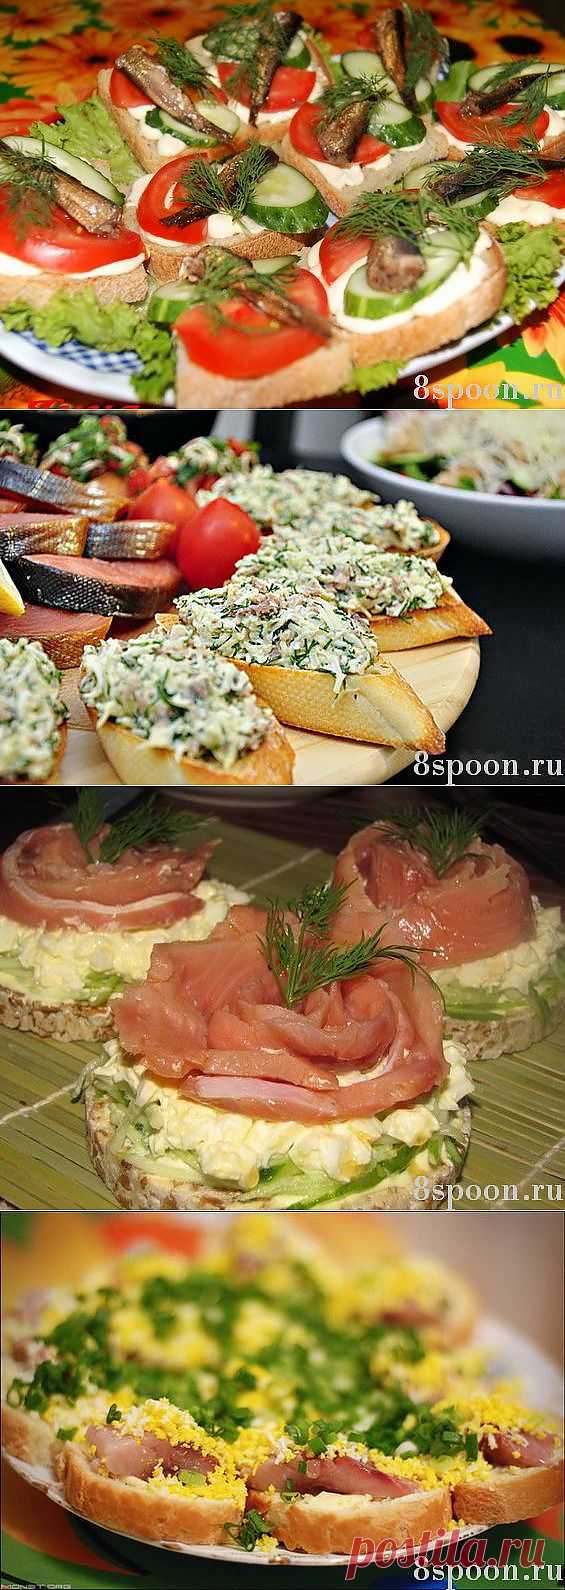 Праздничные бутерброды: вкусные рецепты с фото | 8 Ложек